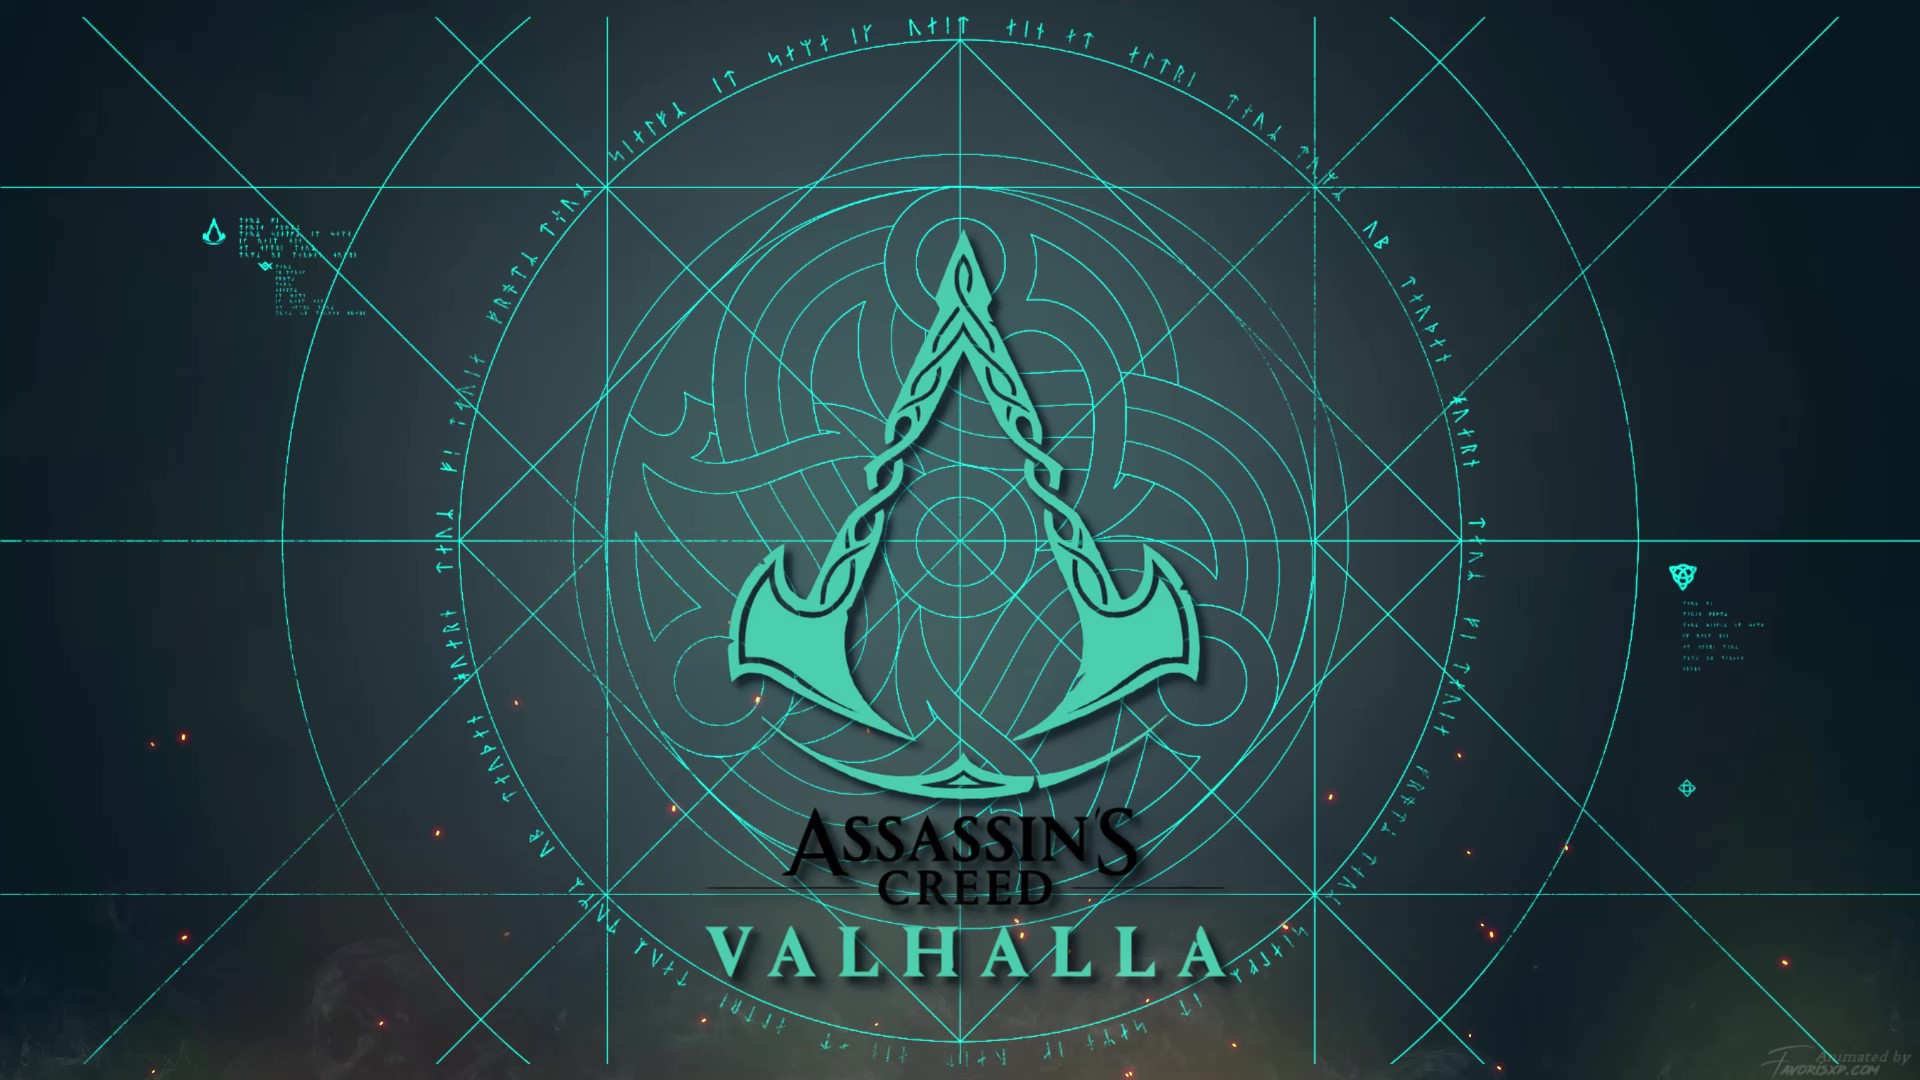 Assassin's Creed Valhalla Live Wallpaper by Favorisxp on DeviantArt